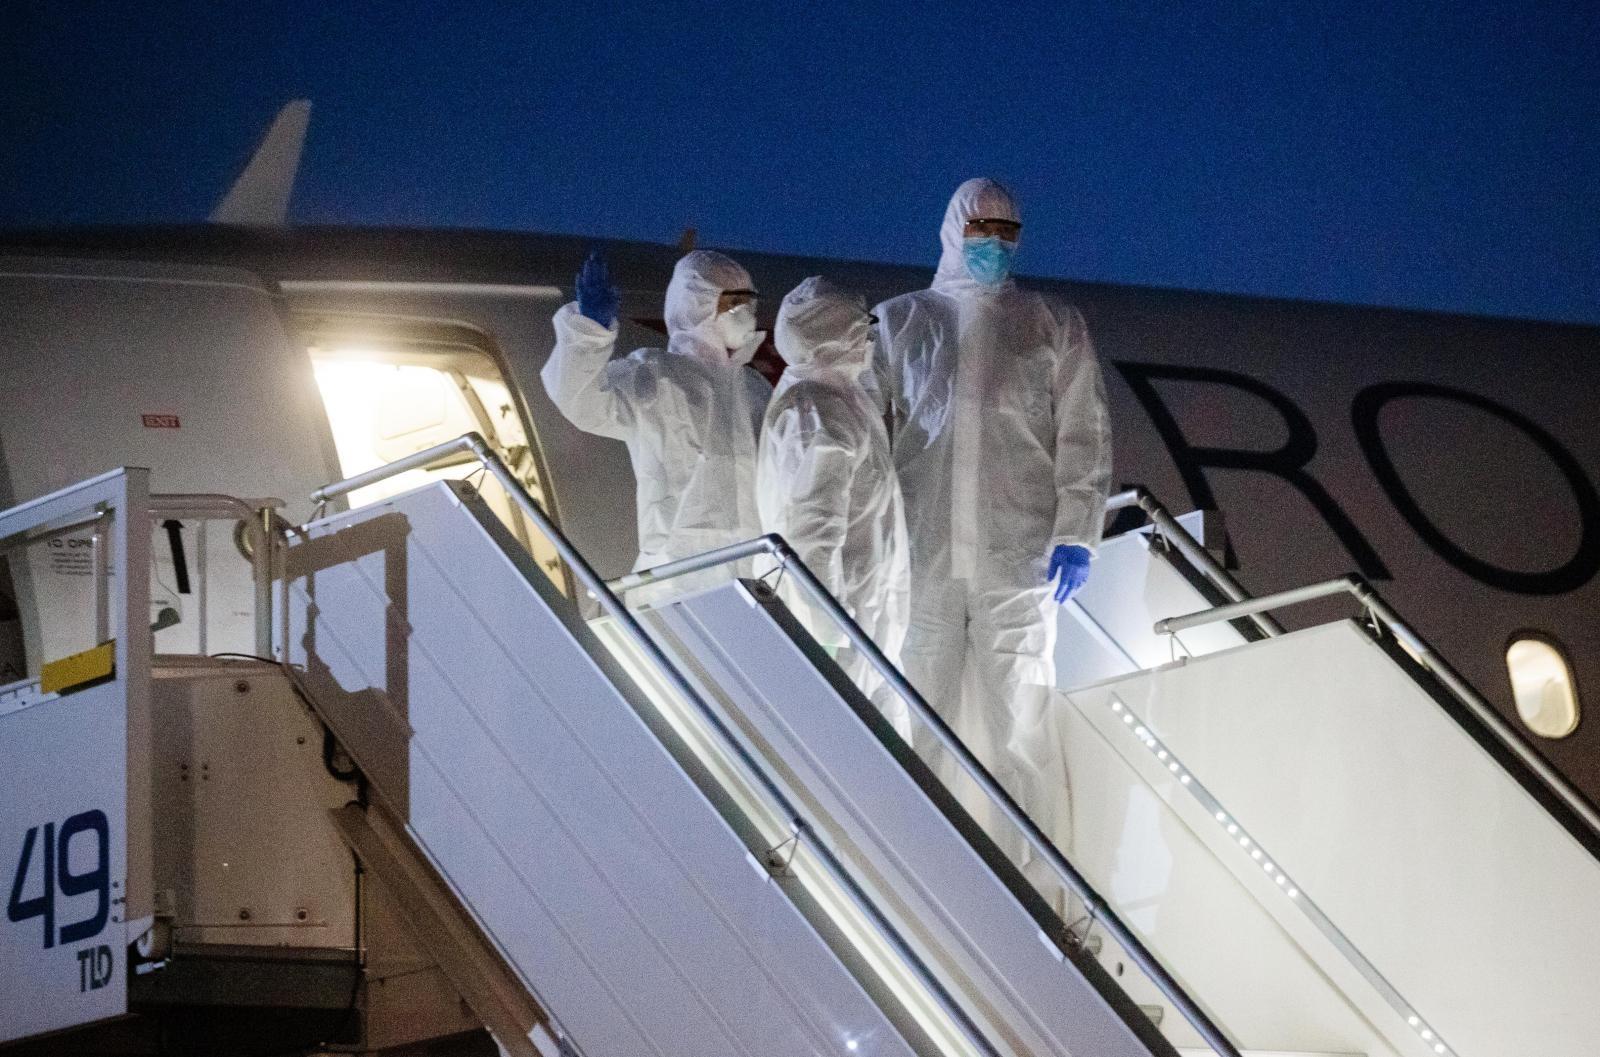 Muškarac zaražen koronavirusom stigao letom Croatia Airlinesa, u avionu bilo 66 putnika